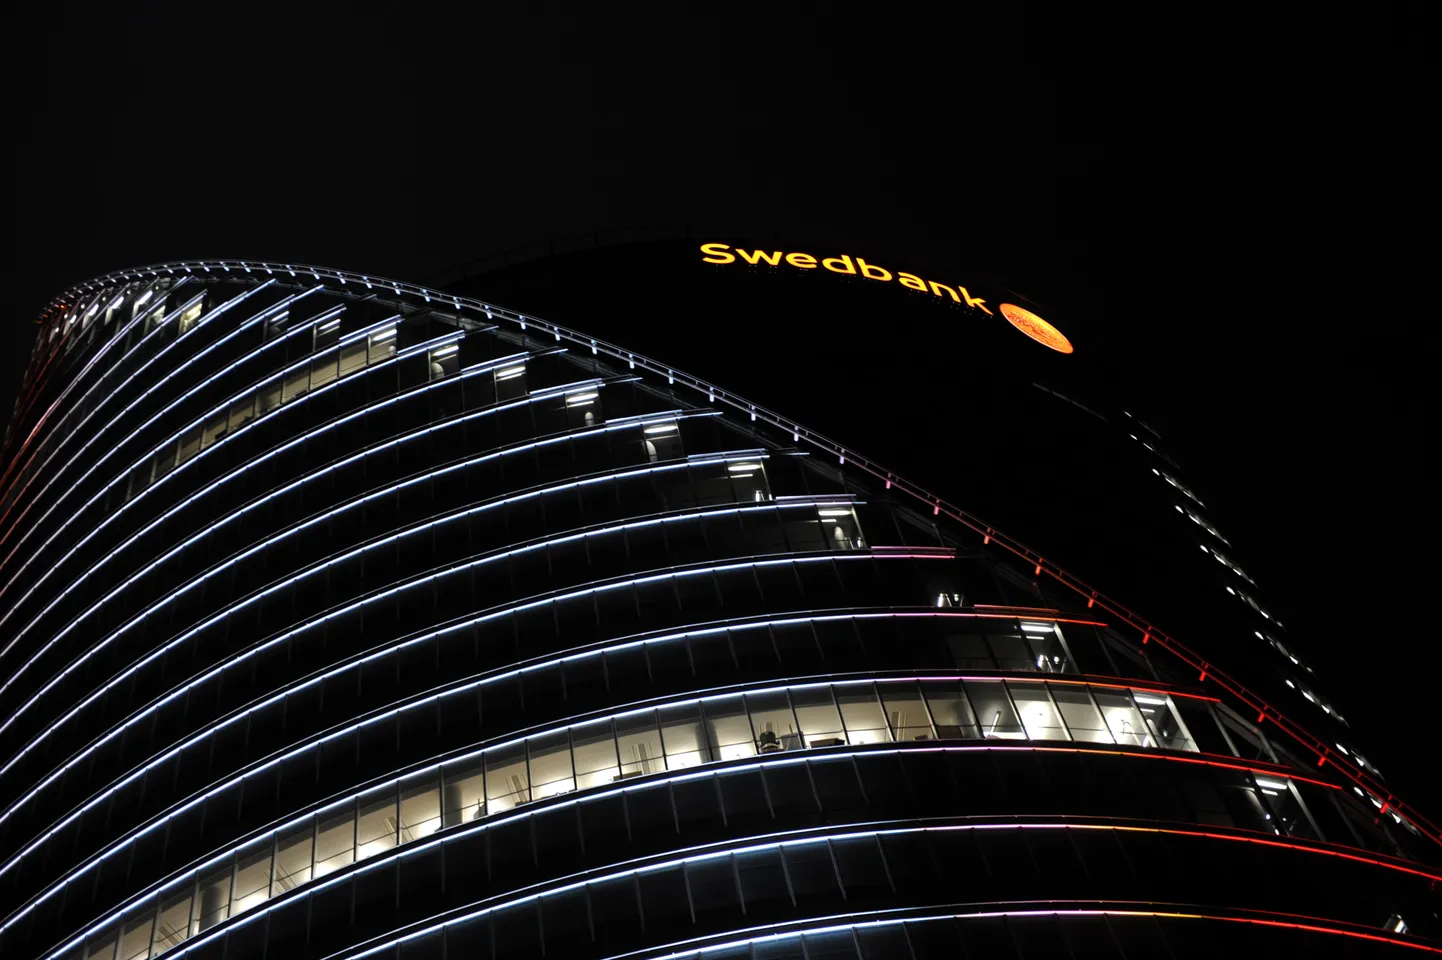 "Swedbank" ēka. Ilustratīvs attēls. 